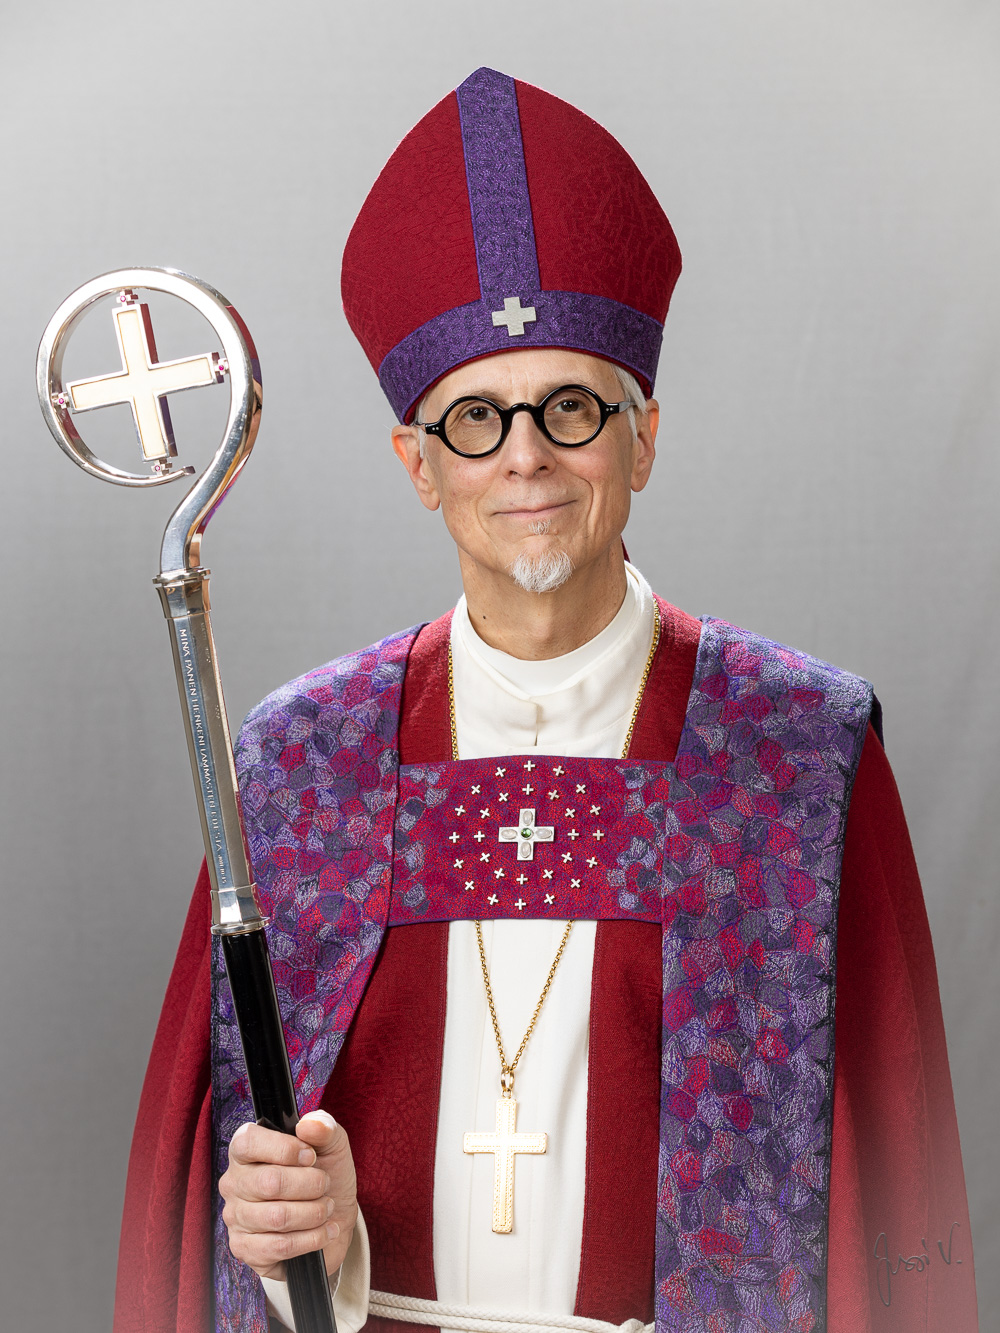 Piispa Matti Repo piispan hiippa päässä ja piispan sauva kädessään.